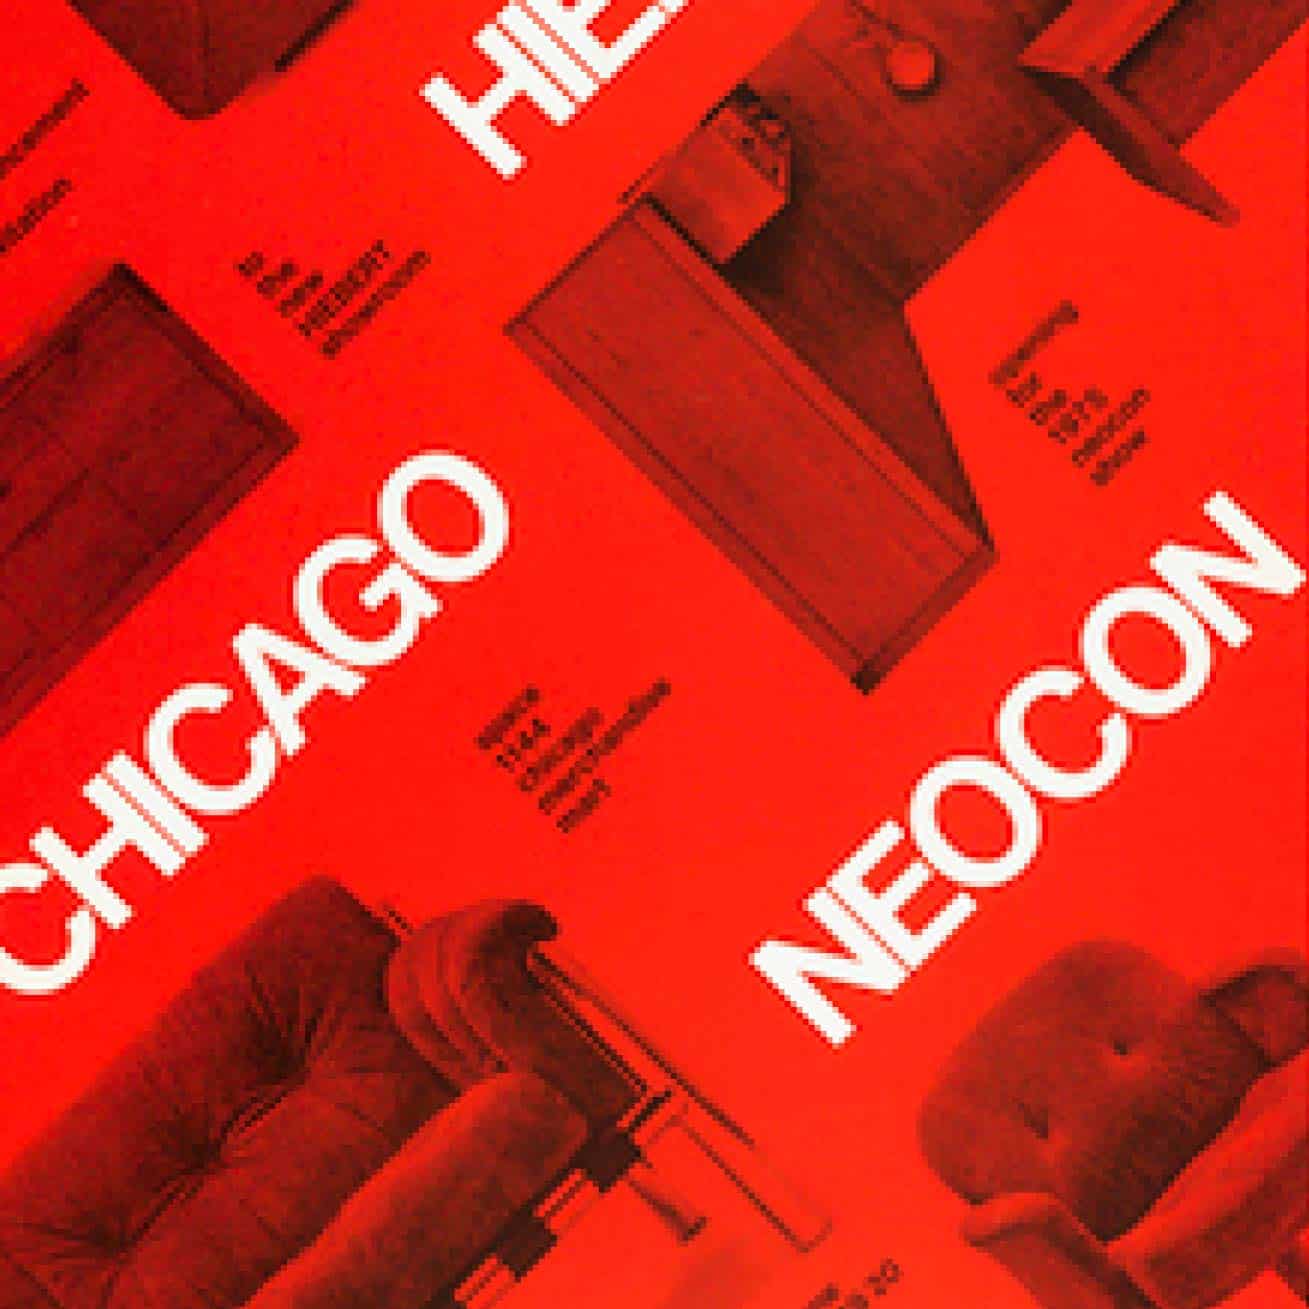 Chicago NeoCon logo